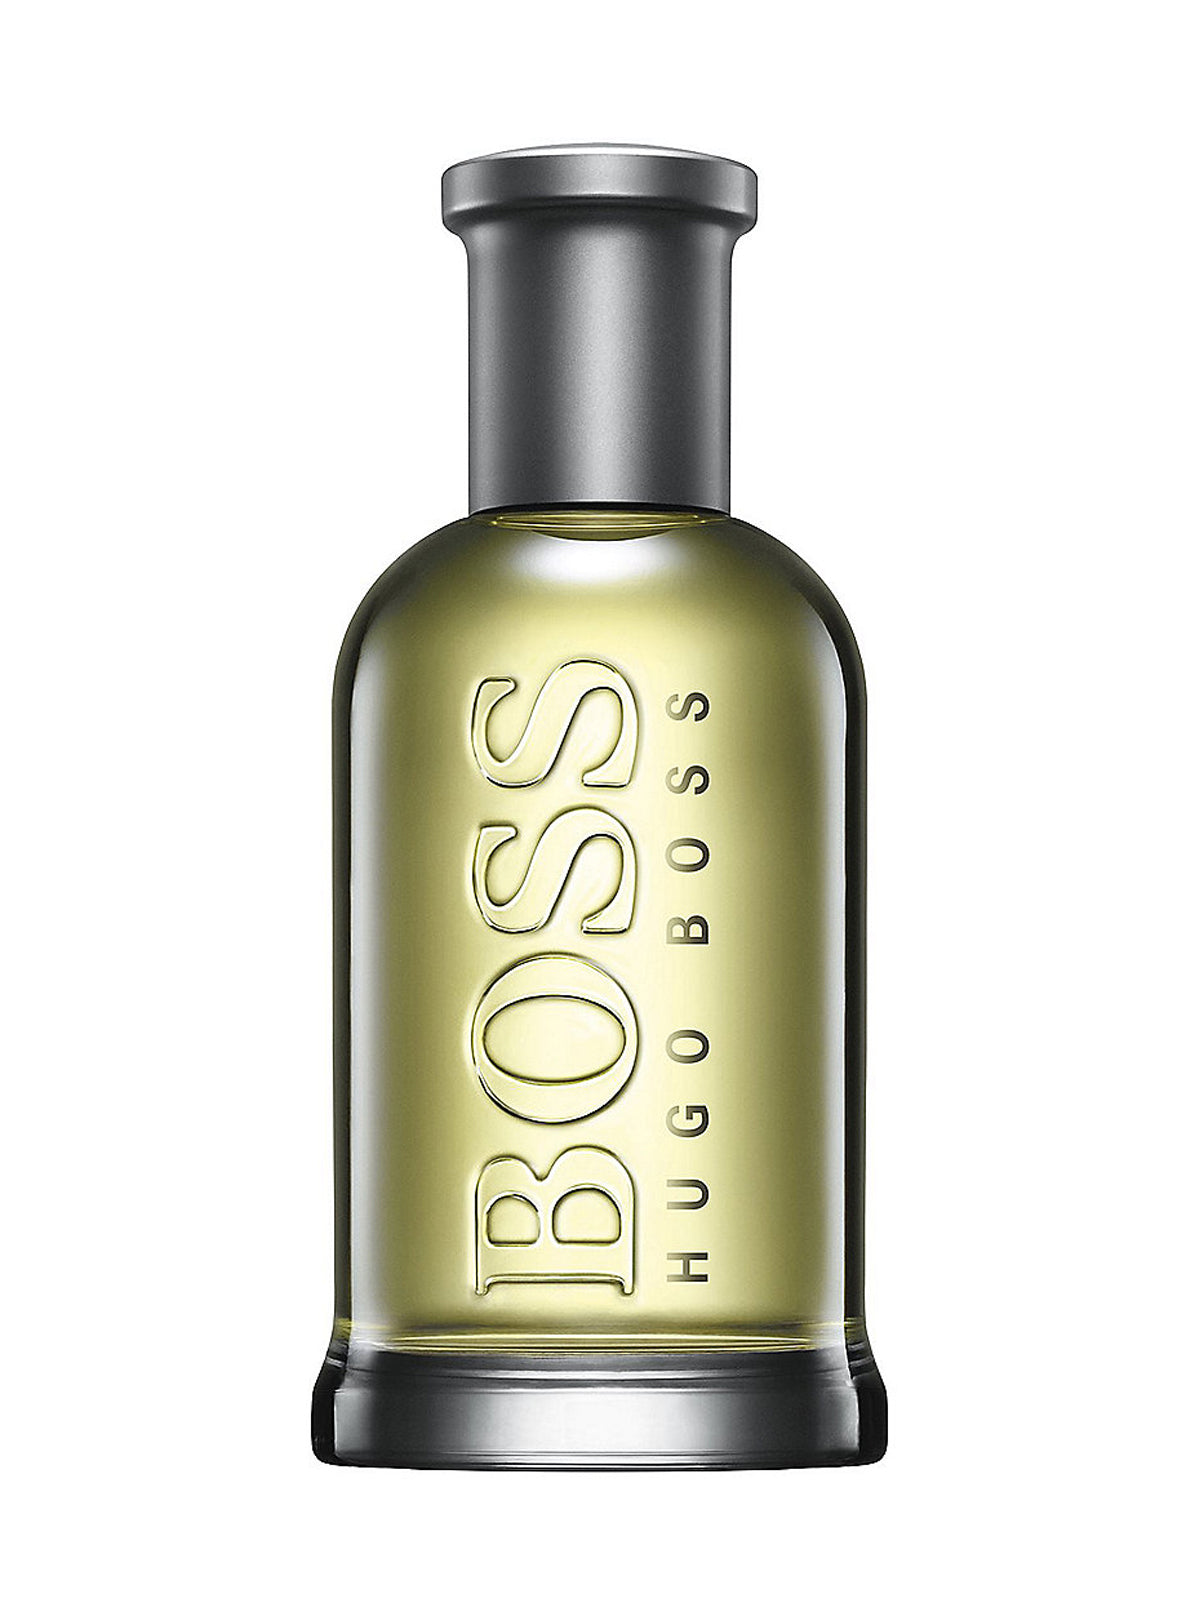 Hugo Boss Boss Bottled EDT for Men